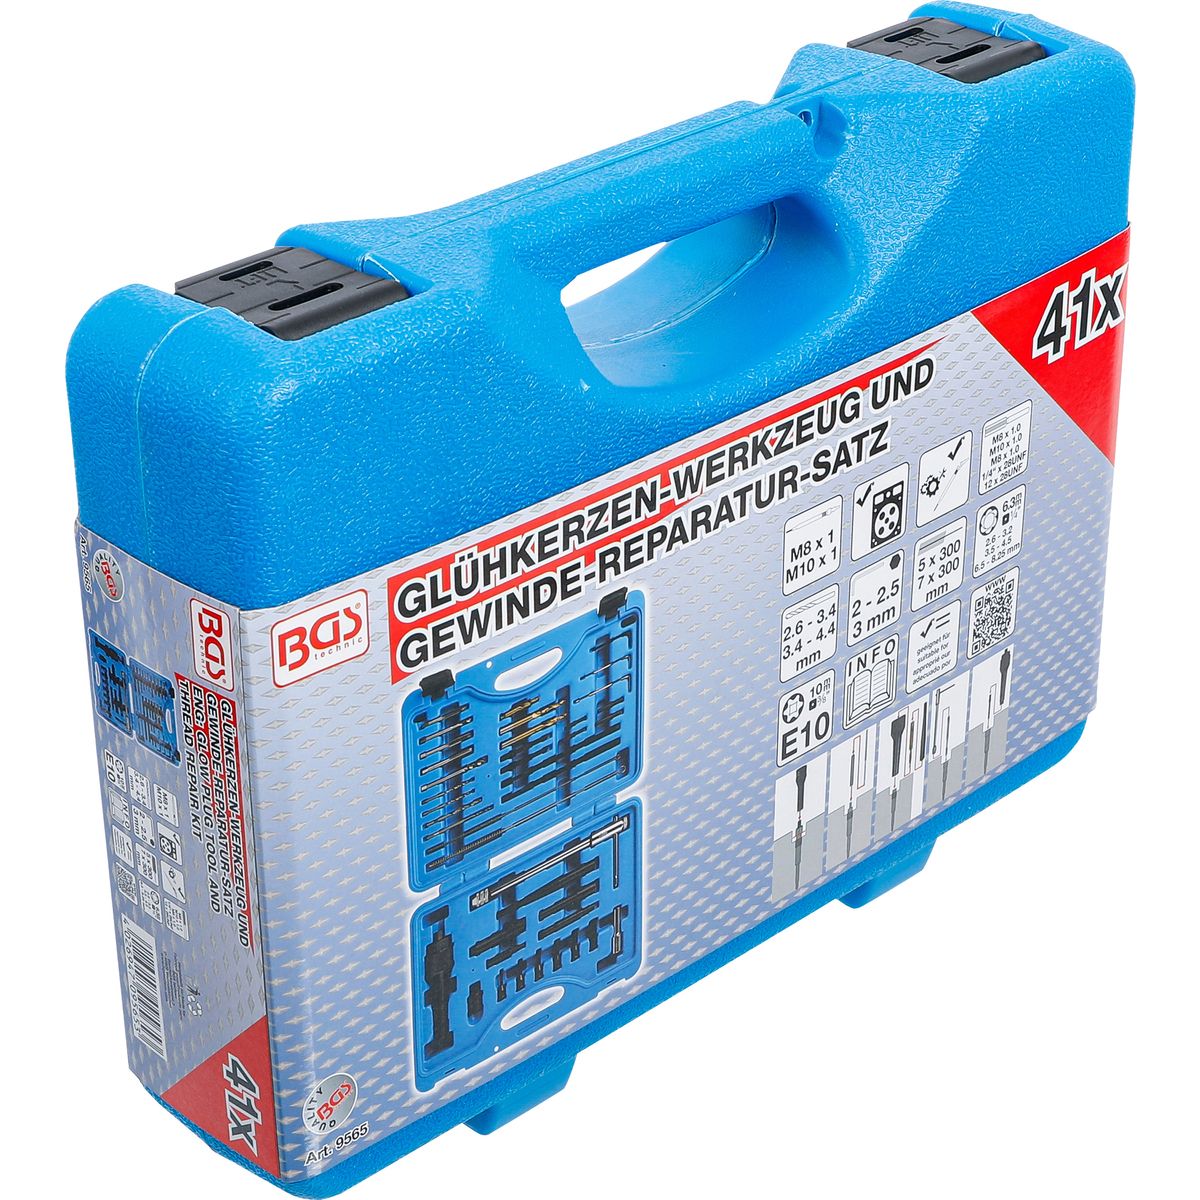 Glow Plug Tool and Thread Repair Kit | M8, M10 | 41 pcs.